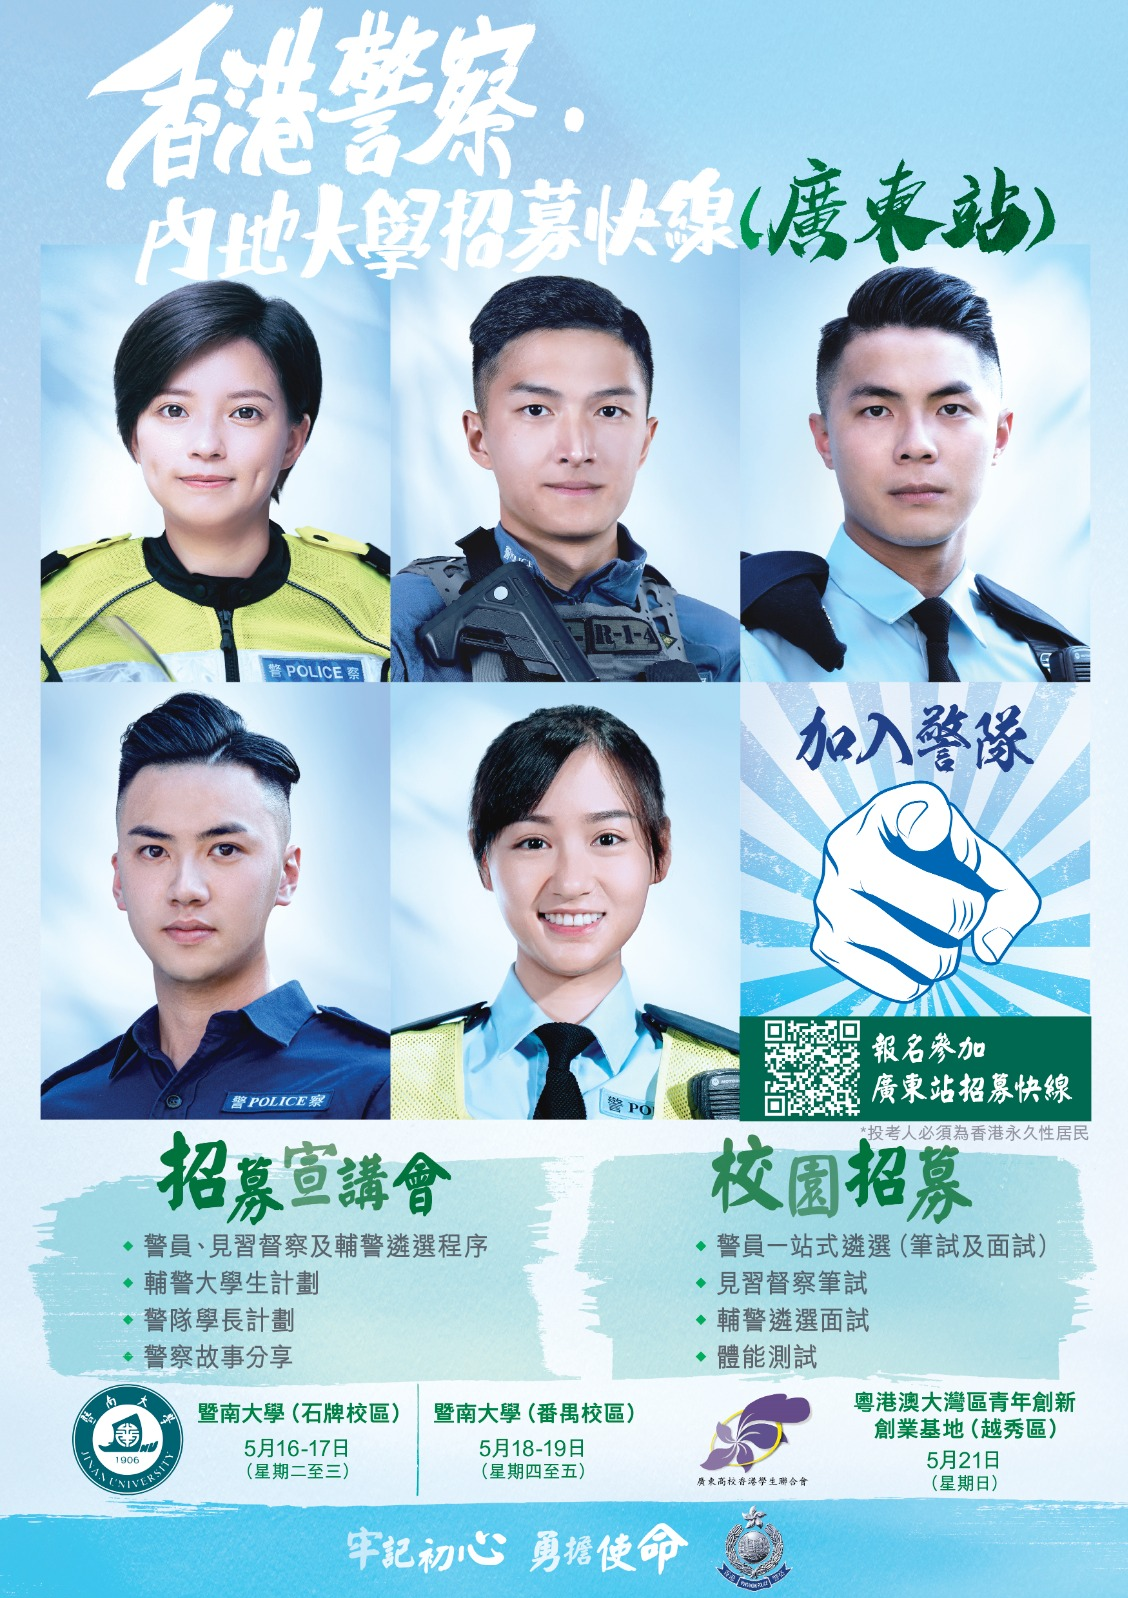 「香港警察‧内地大学招募快线」- 广东站